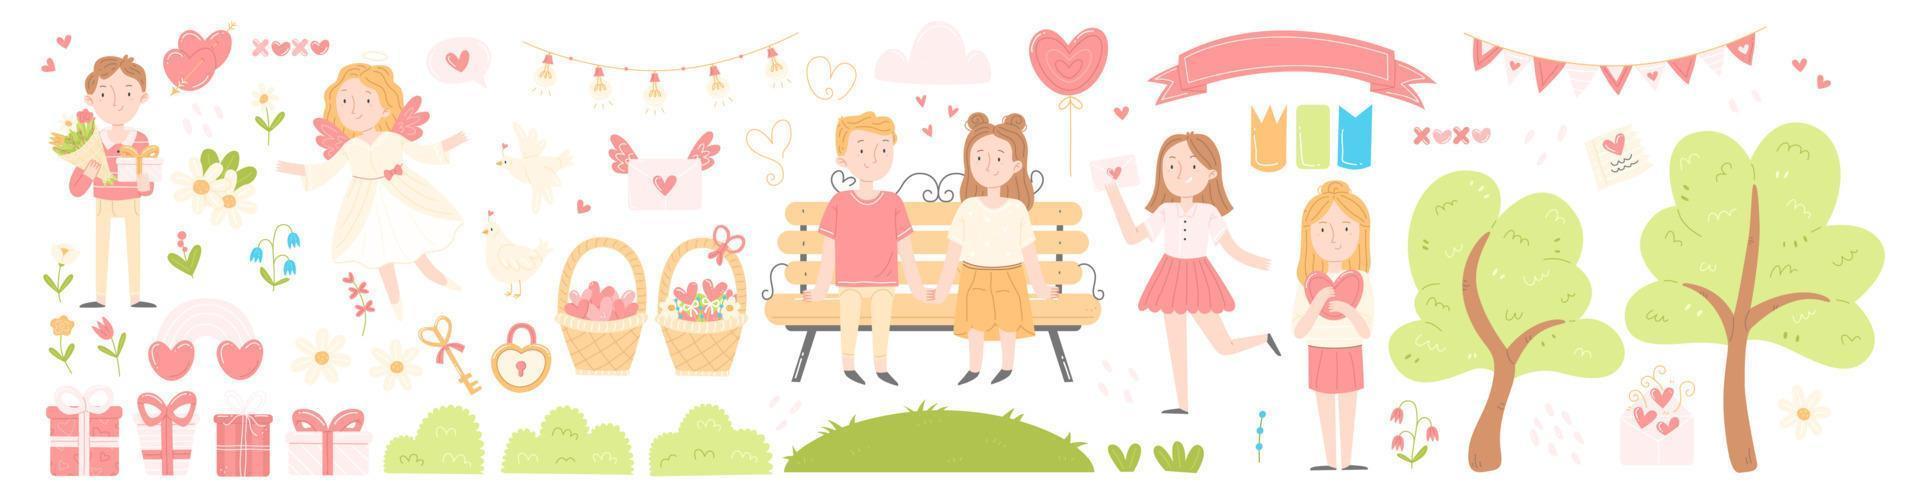 un conjunto de elementos lindos del día de san valentín de dibujos animados. día del amor vector ilustración aislada. personajes enamorados, corazón, regalo, carta de amor, fecha.